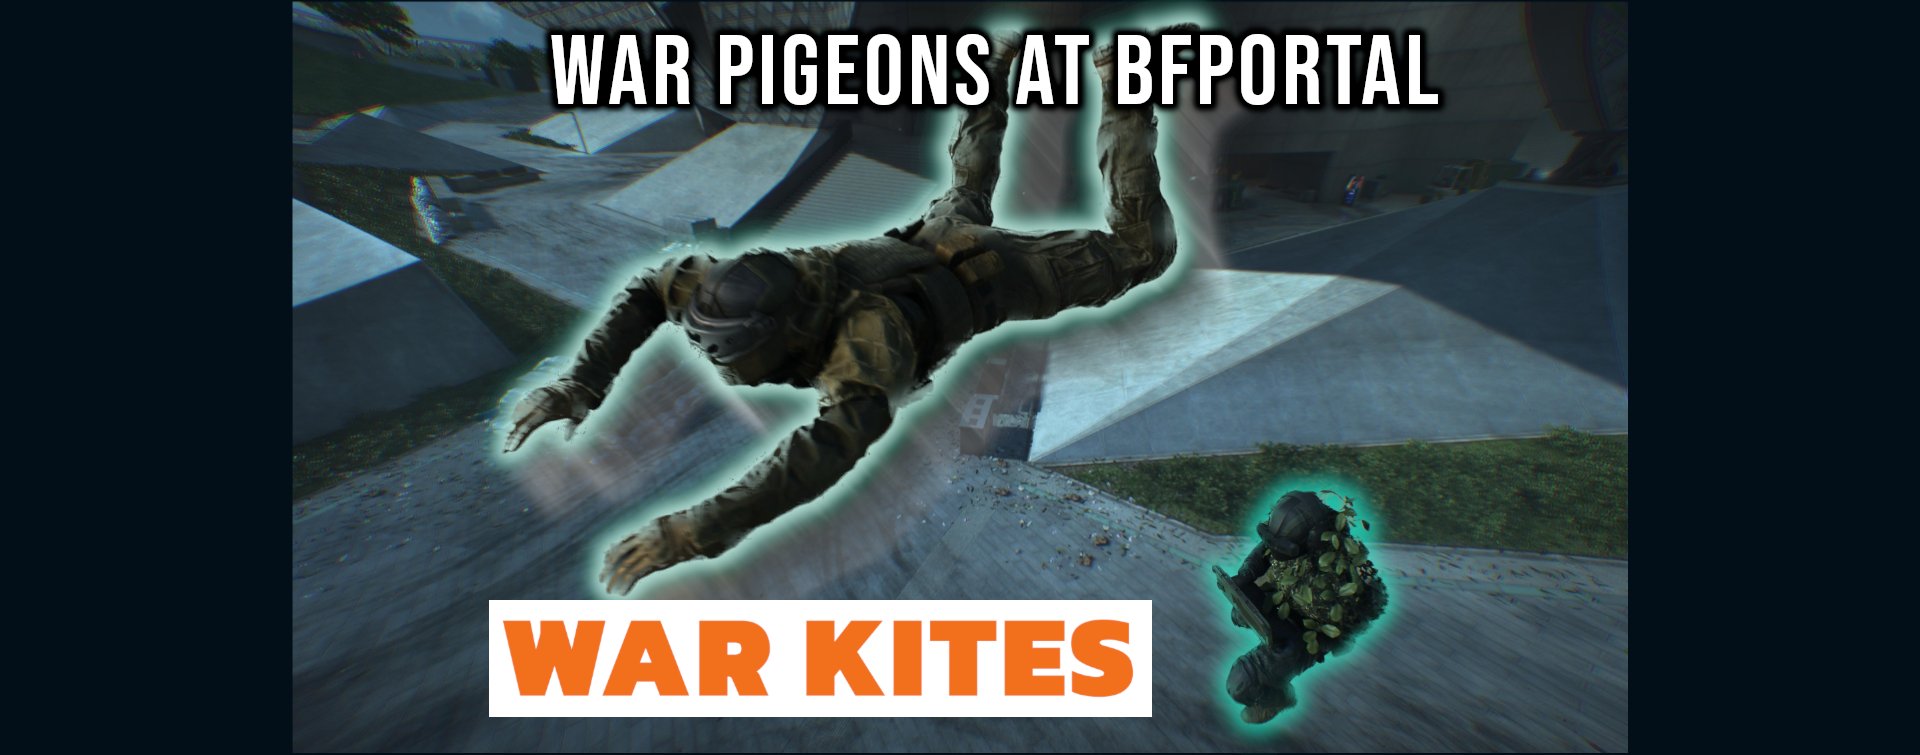 war-kites